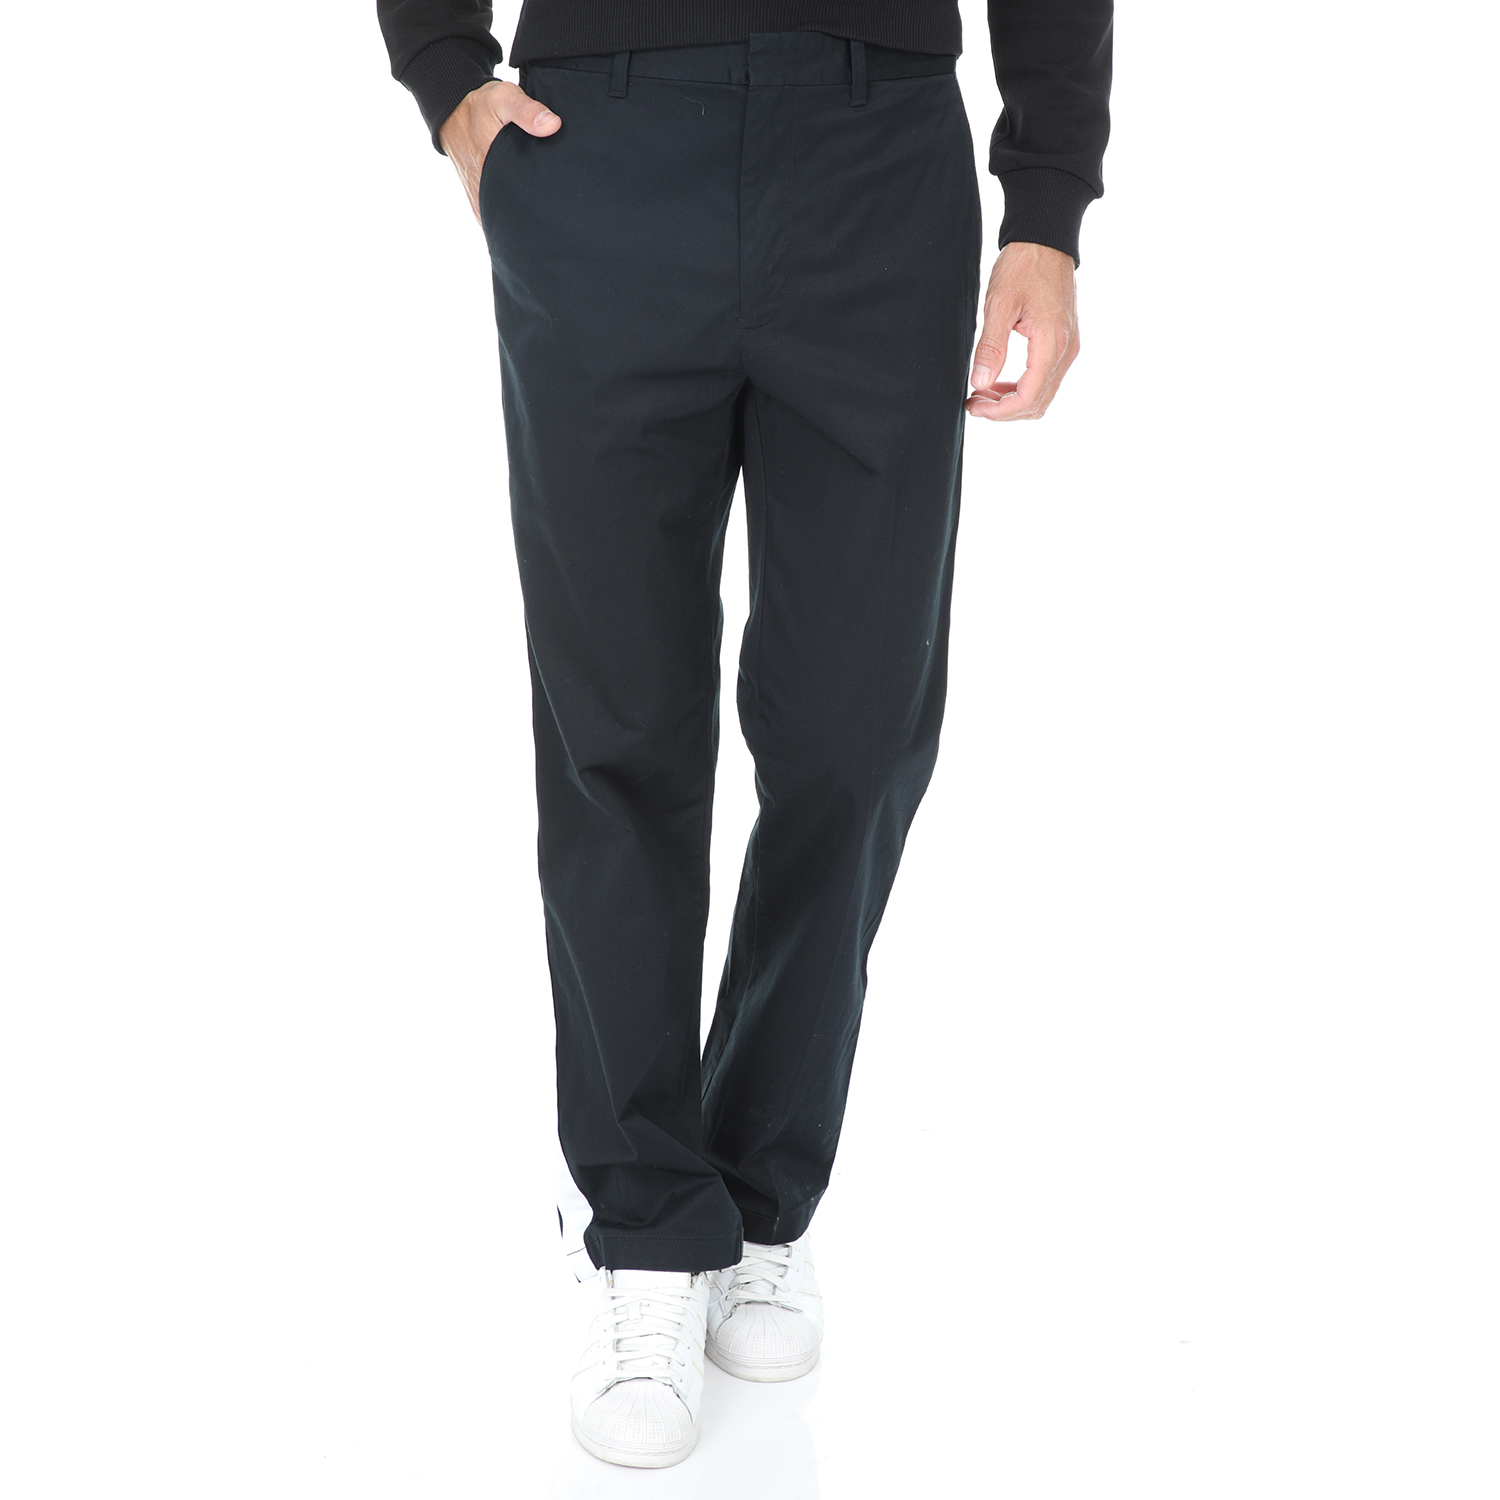 Ανδρικά/Ρούχα/Παντελόνια/Chinos CALVIN KLEIN JEANS - Ανδρικό παντελόνι GALON STRAIGHT CHINO μαύρο